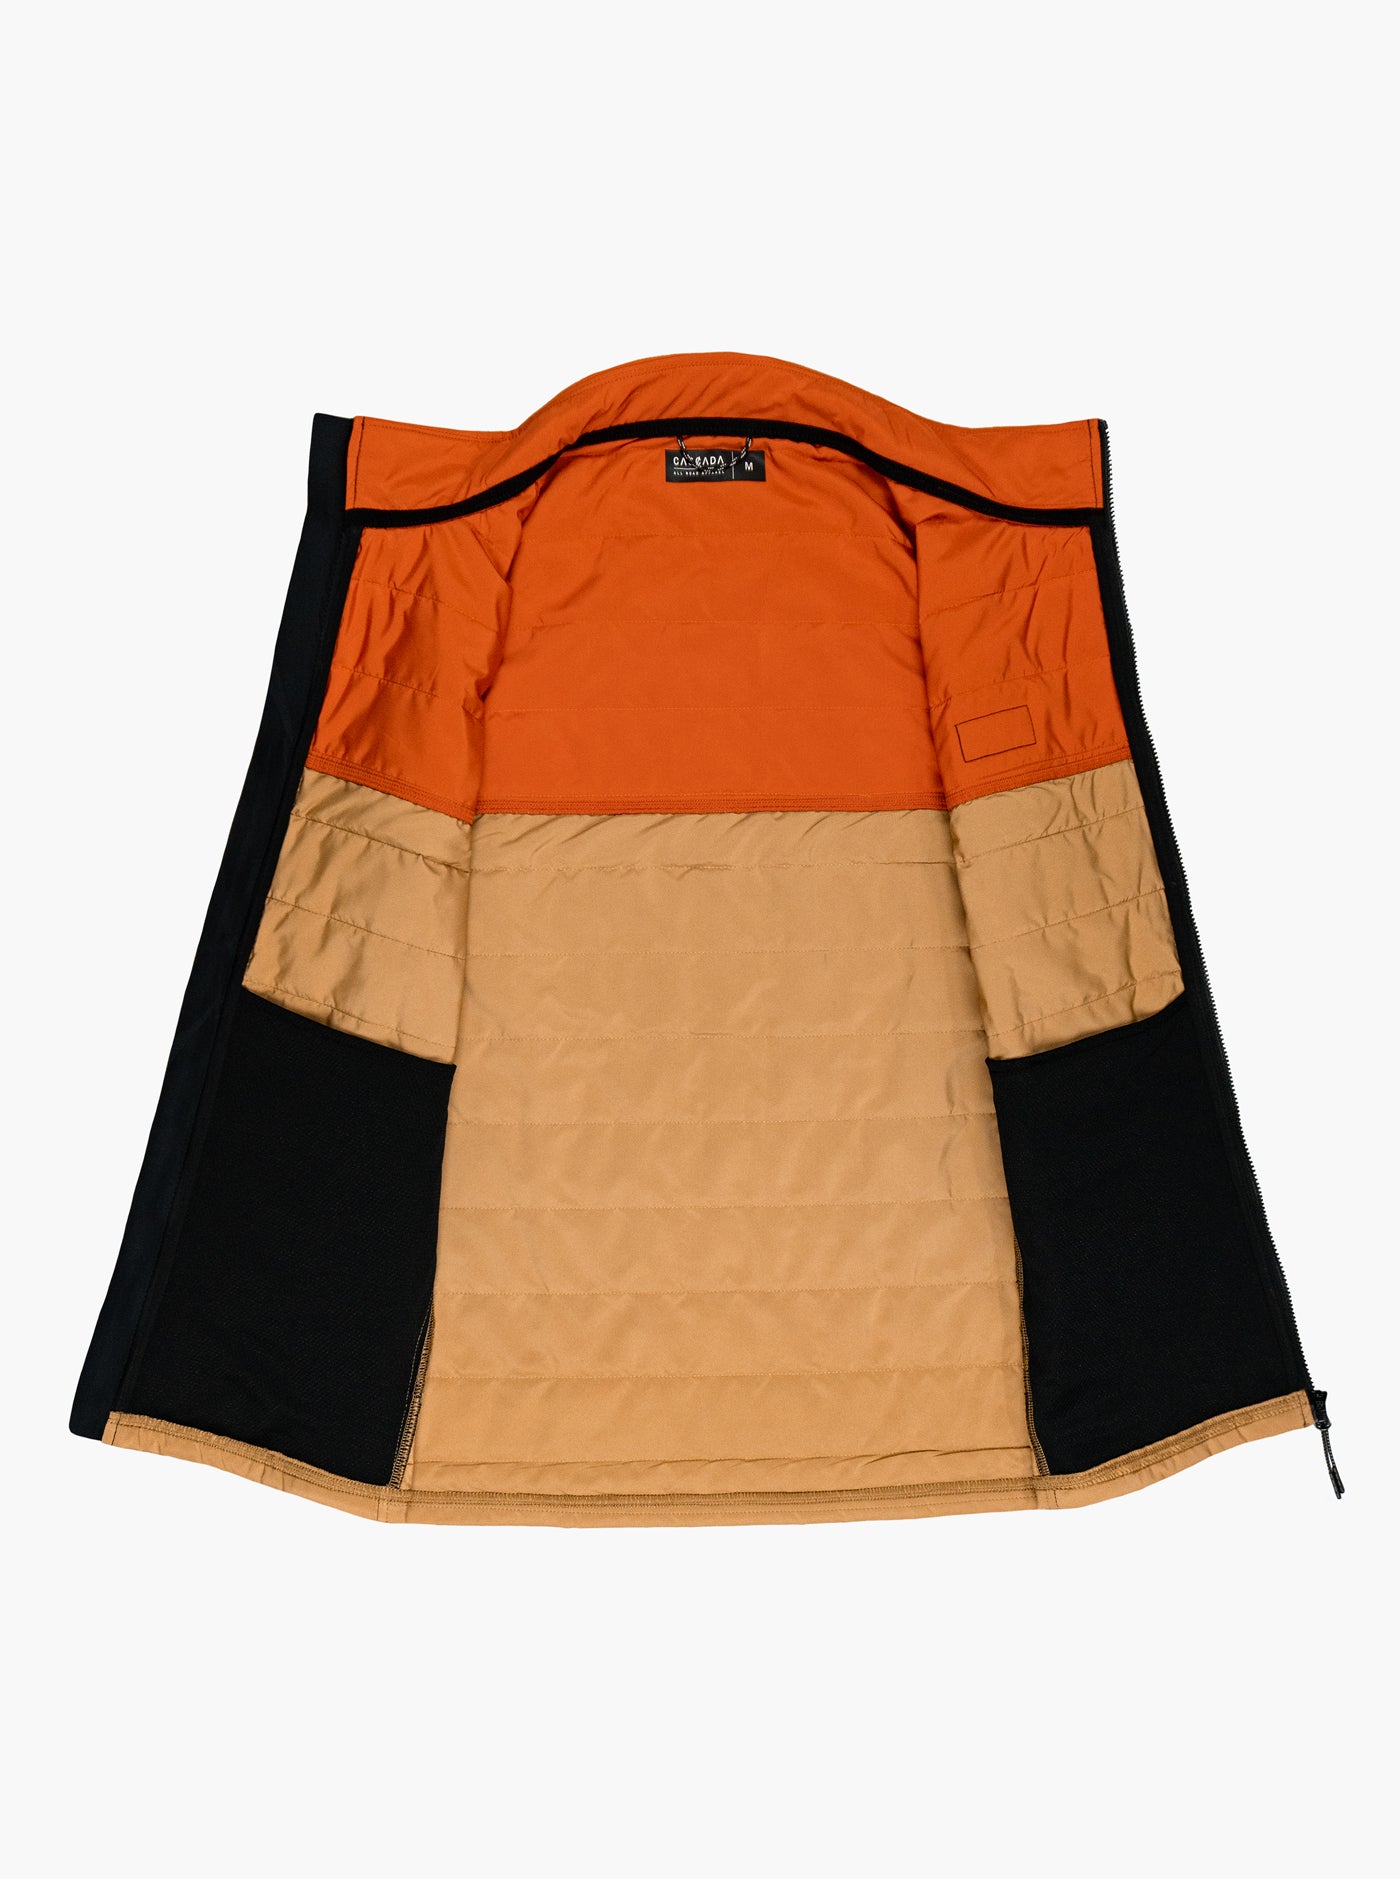 Guide Ultralight Vest - Orange / Dark Tan